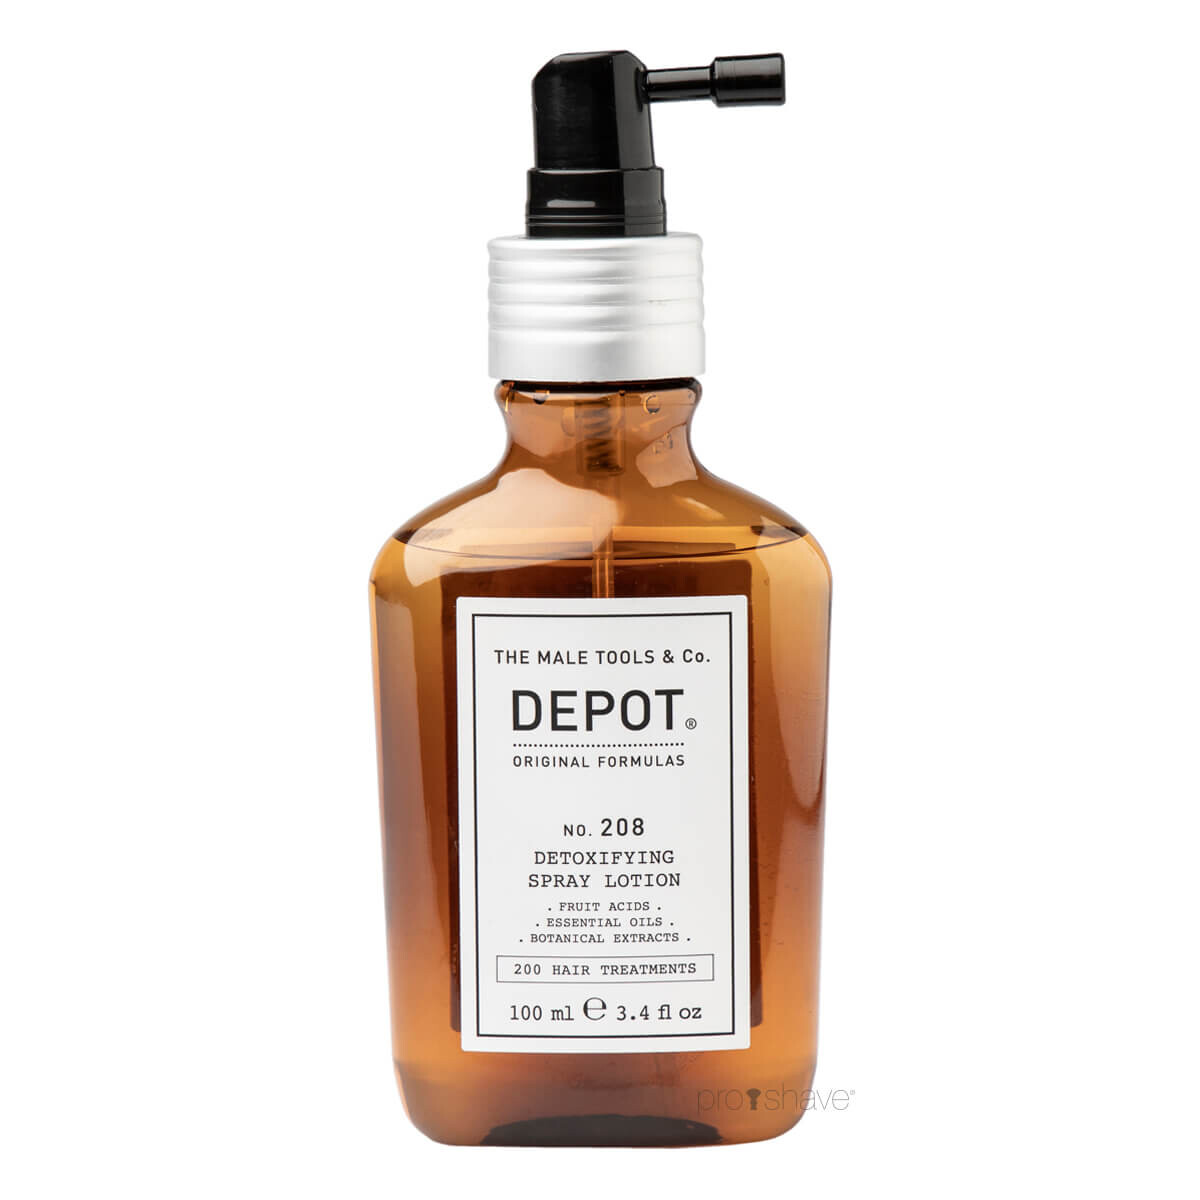 Se Depot Detoxifying Spray Lotion, No. 208, 100 ml. hos Proshave